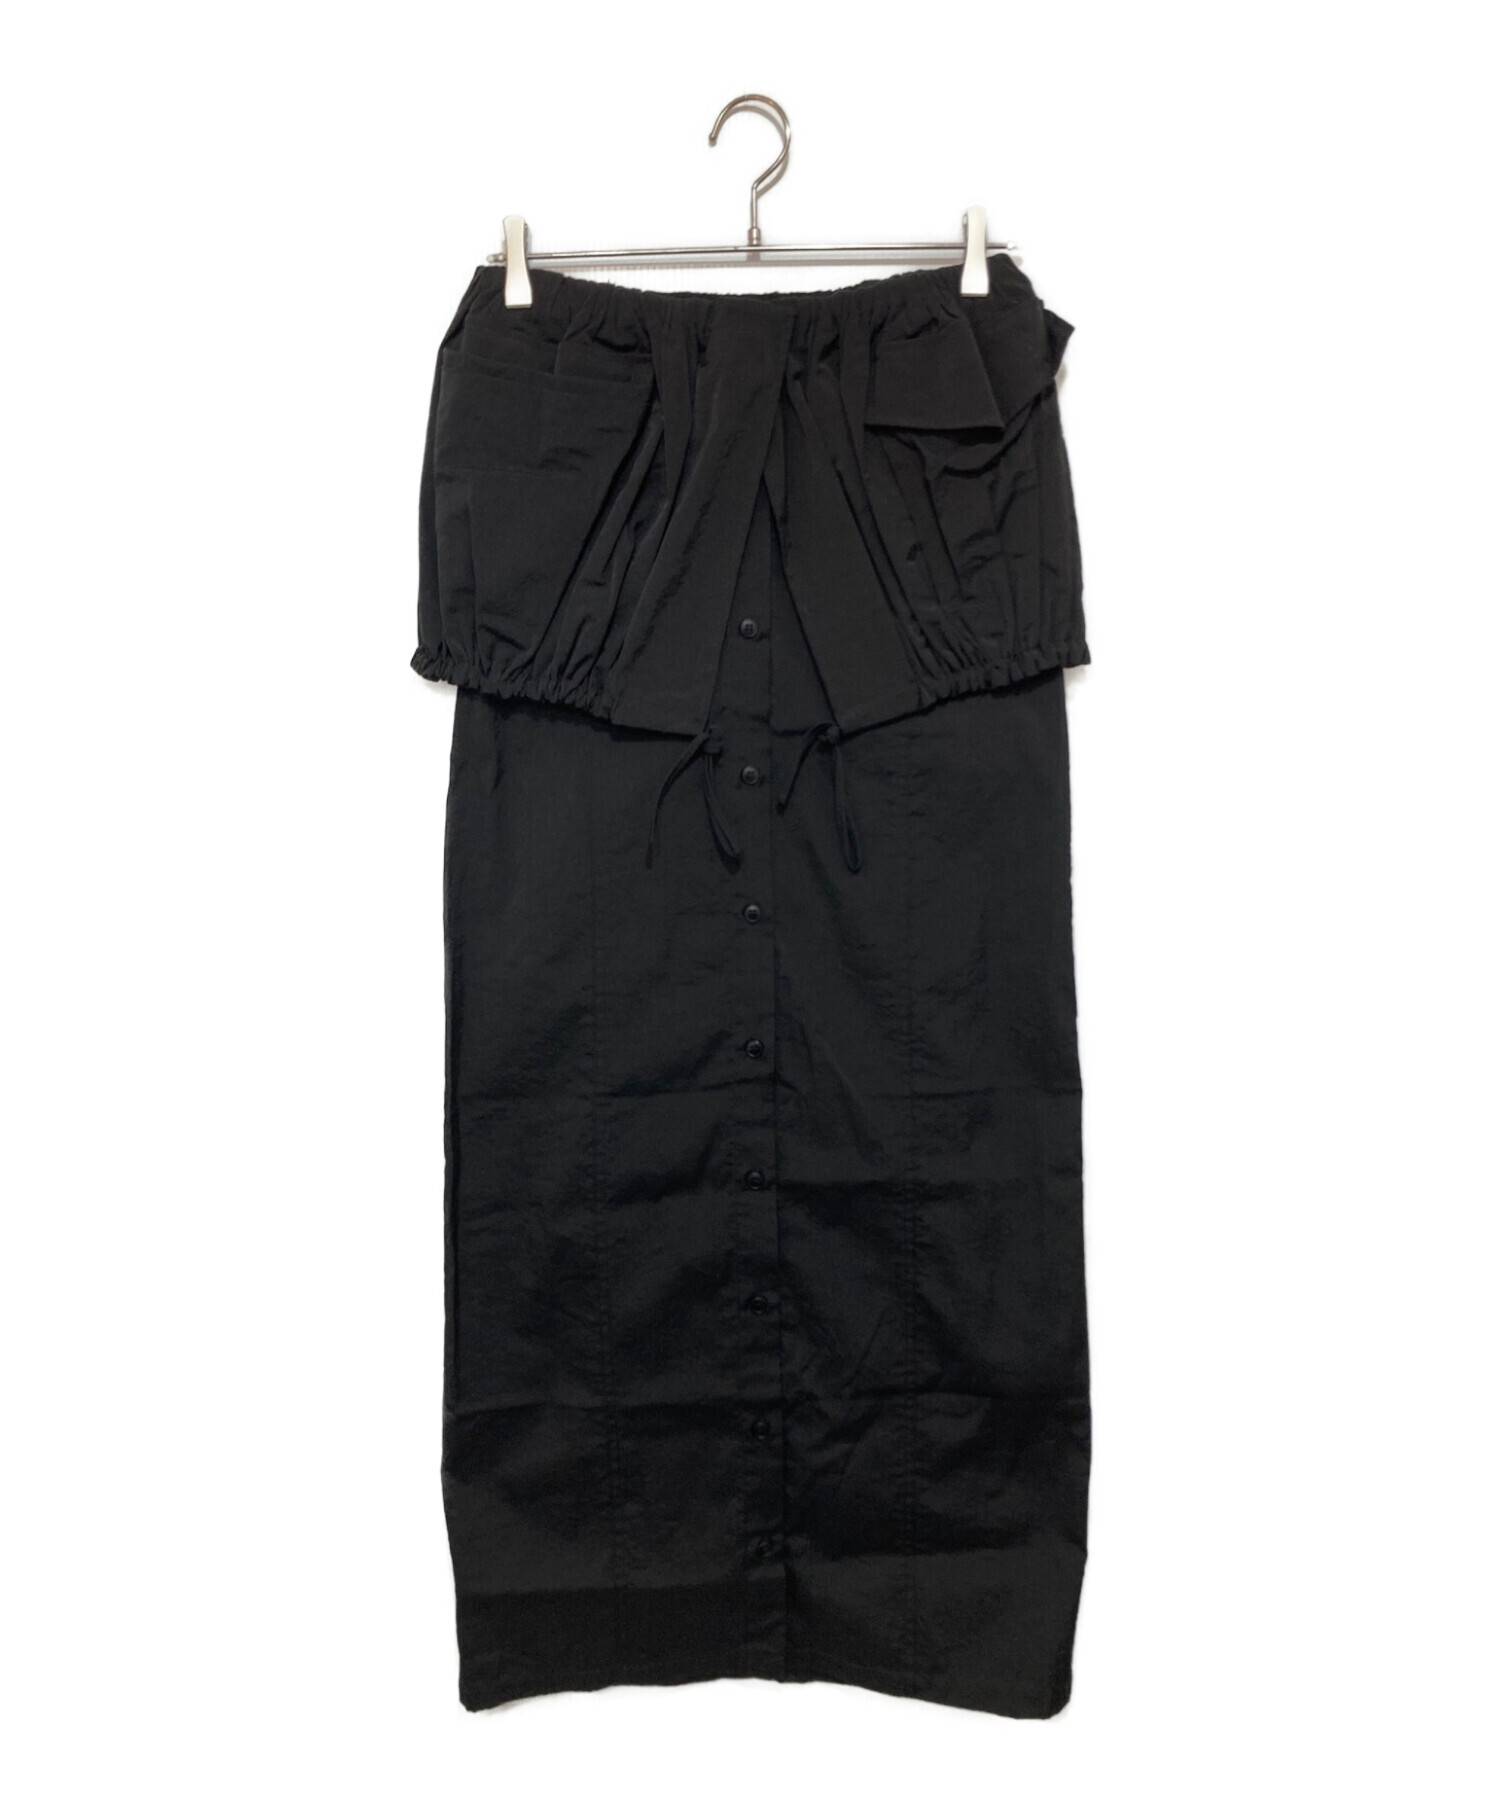 jacquemus (ジャックムス) レイヤードデザインナイロンスカート ブラック サイズ:36カラーピンク 9768円